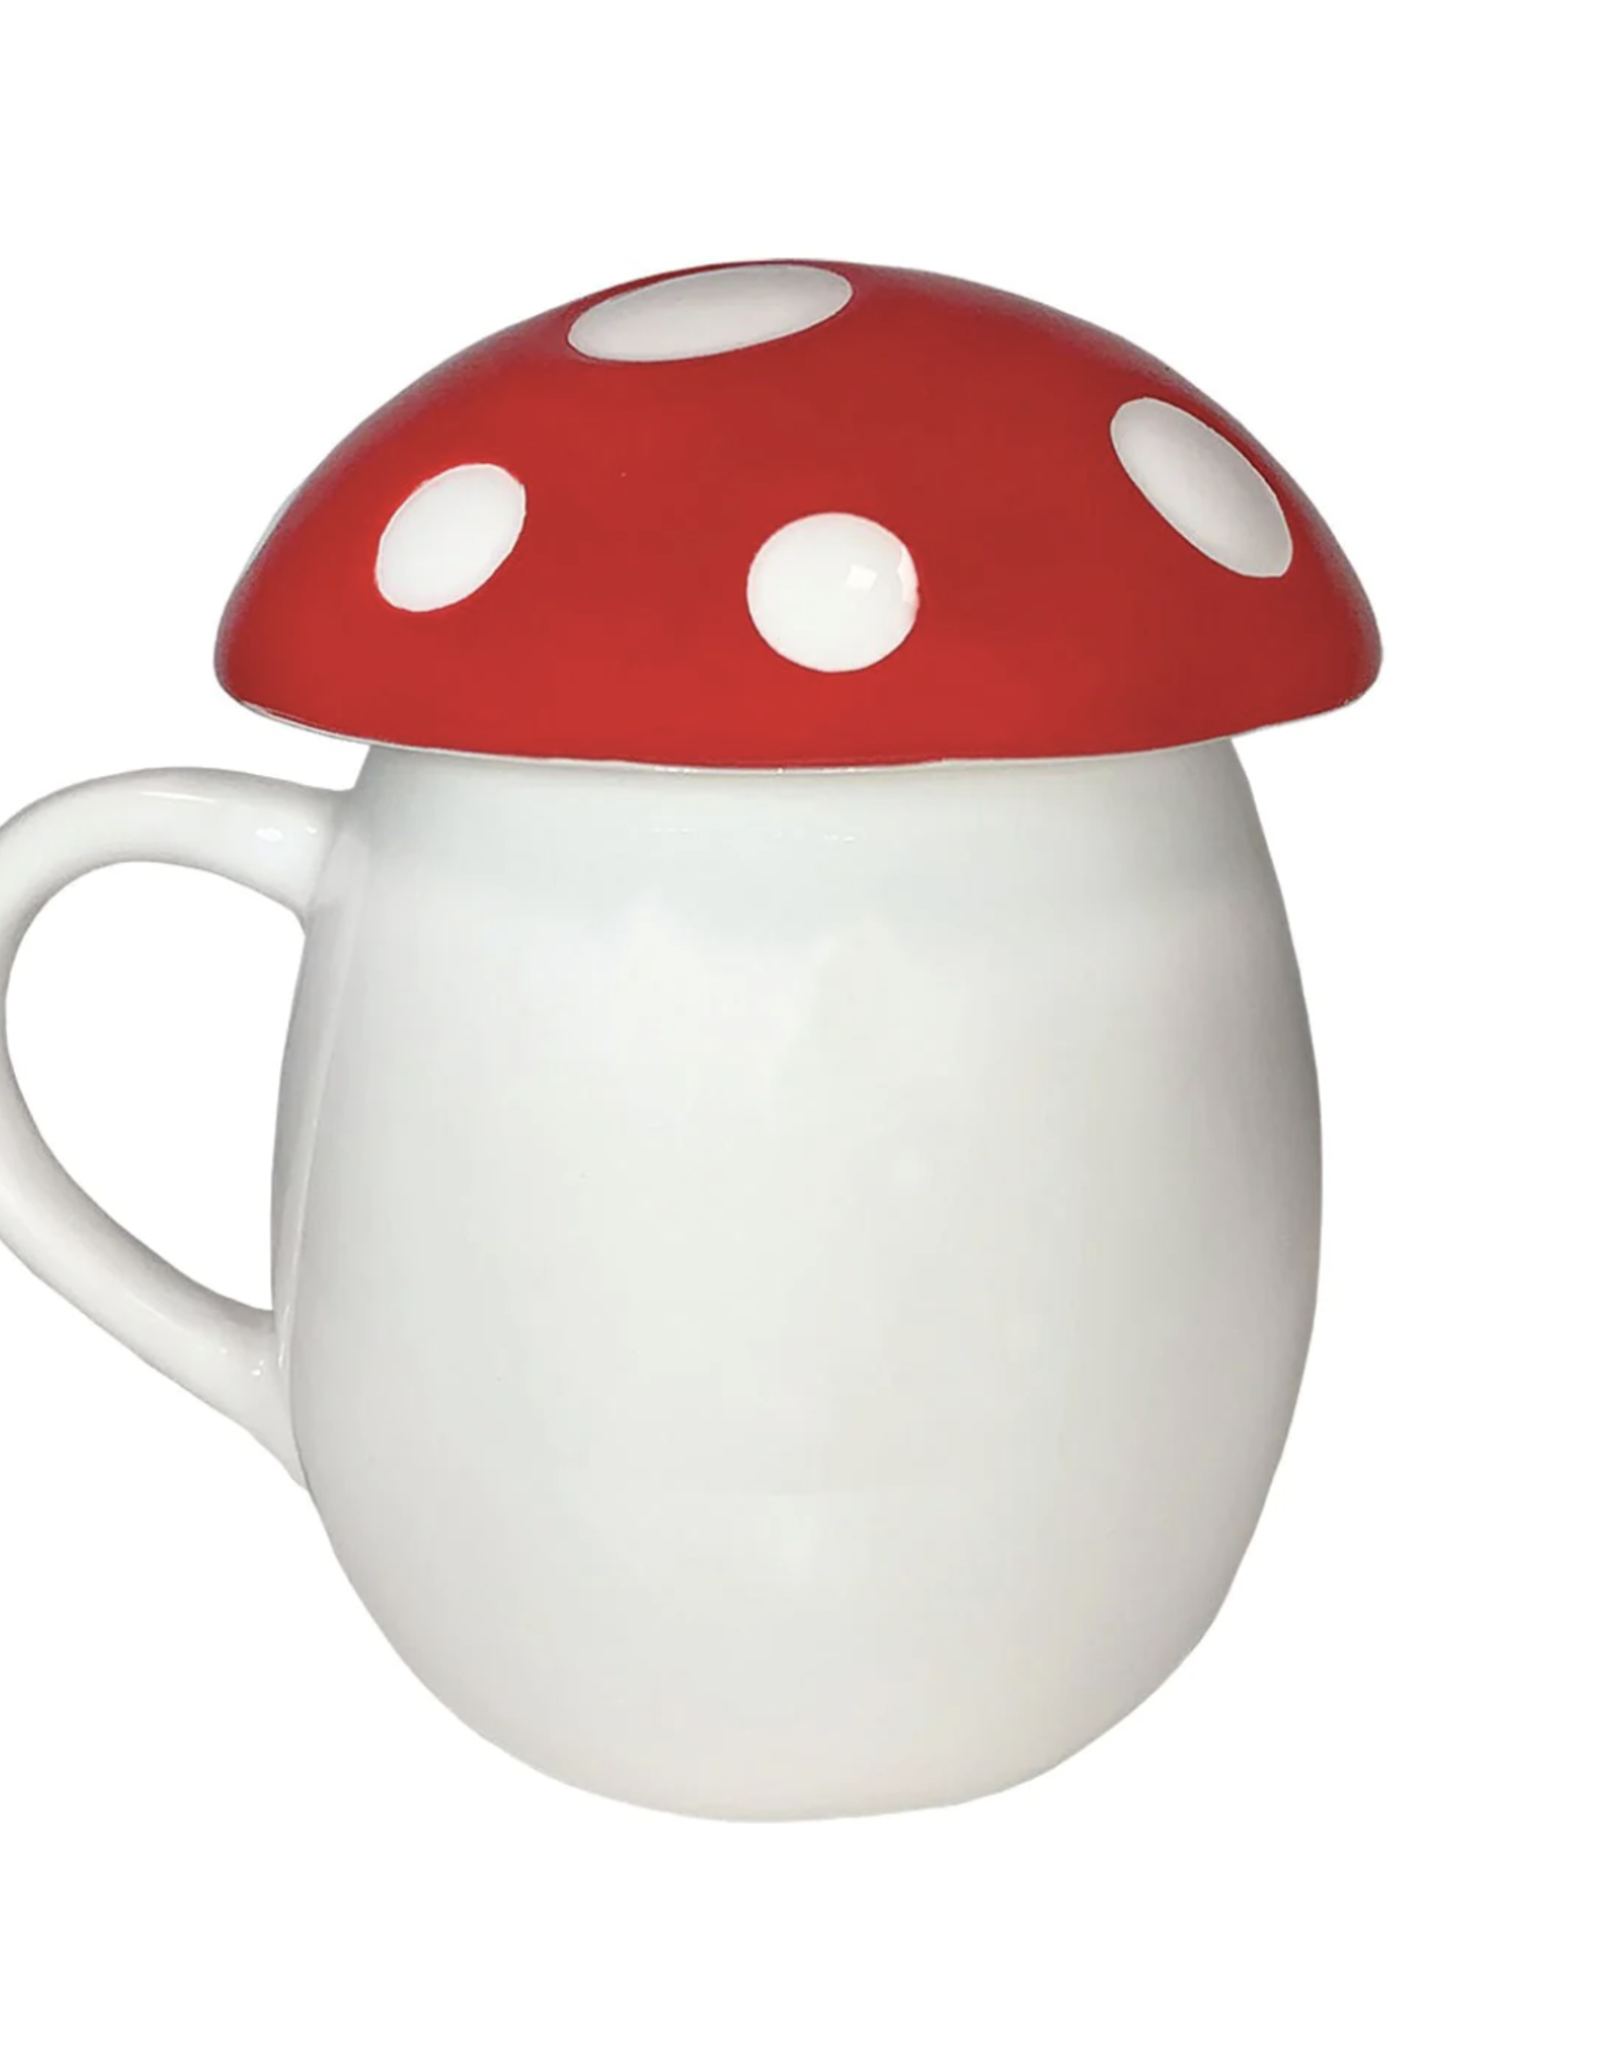 Mushroom Mug with Lid - 12oz